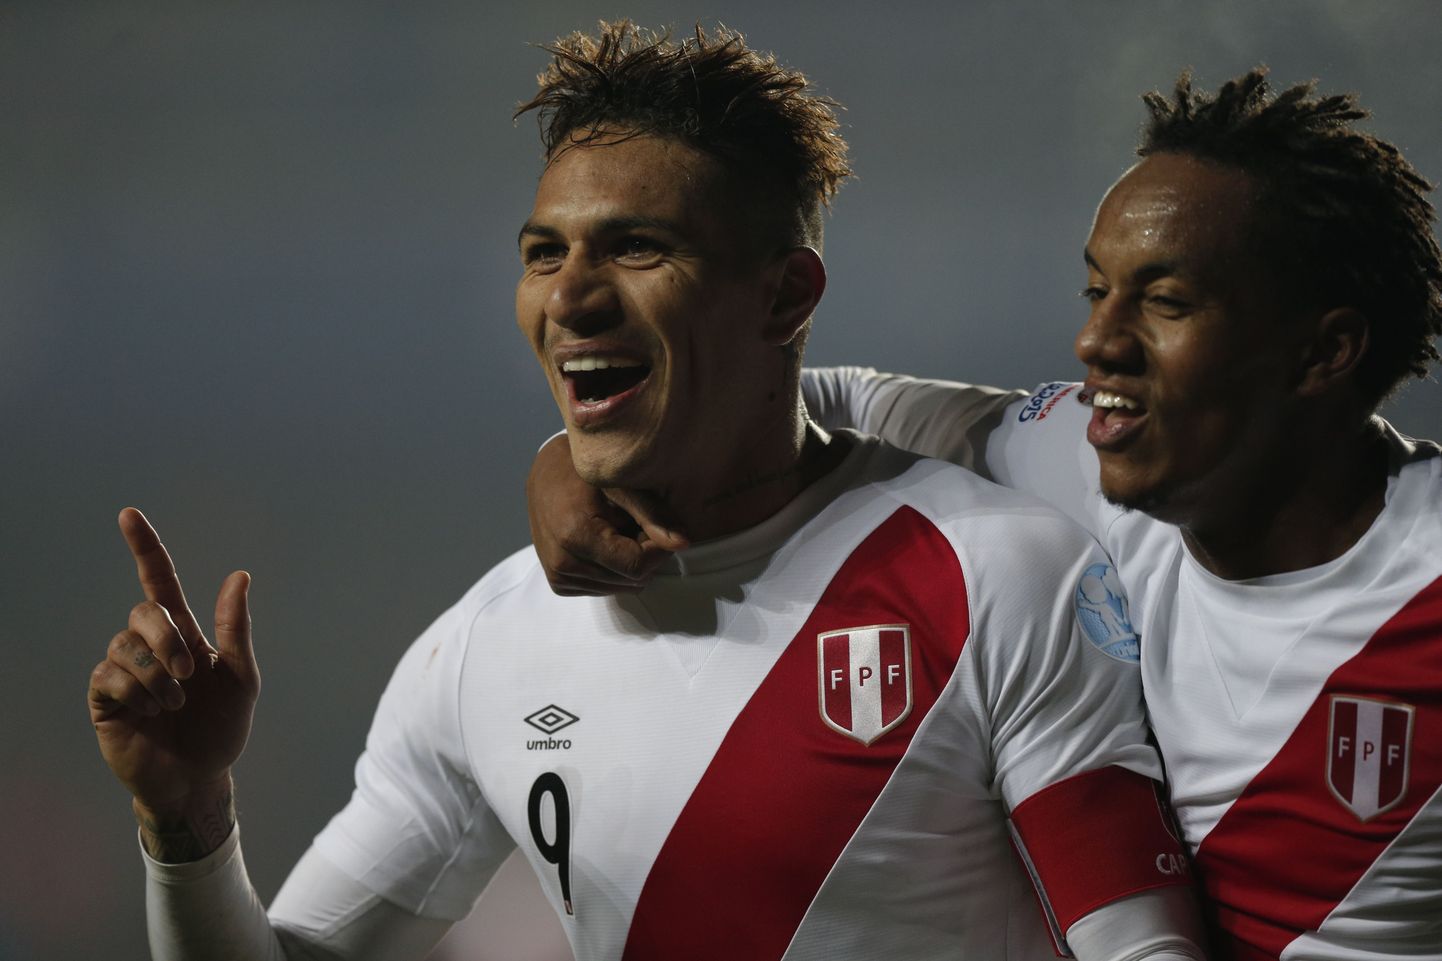 Peruu teise värava löönud Paolo Guerrero (vasakul) koos esimese värava autori Andre Carrilloga.